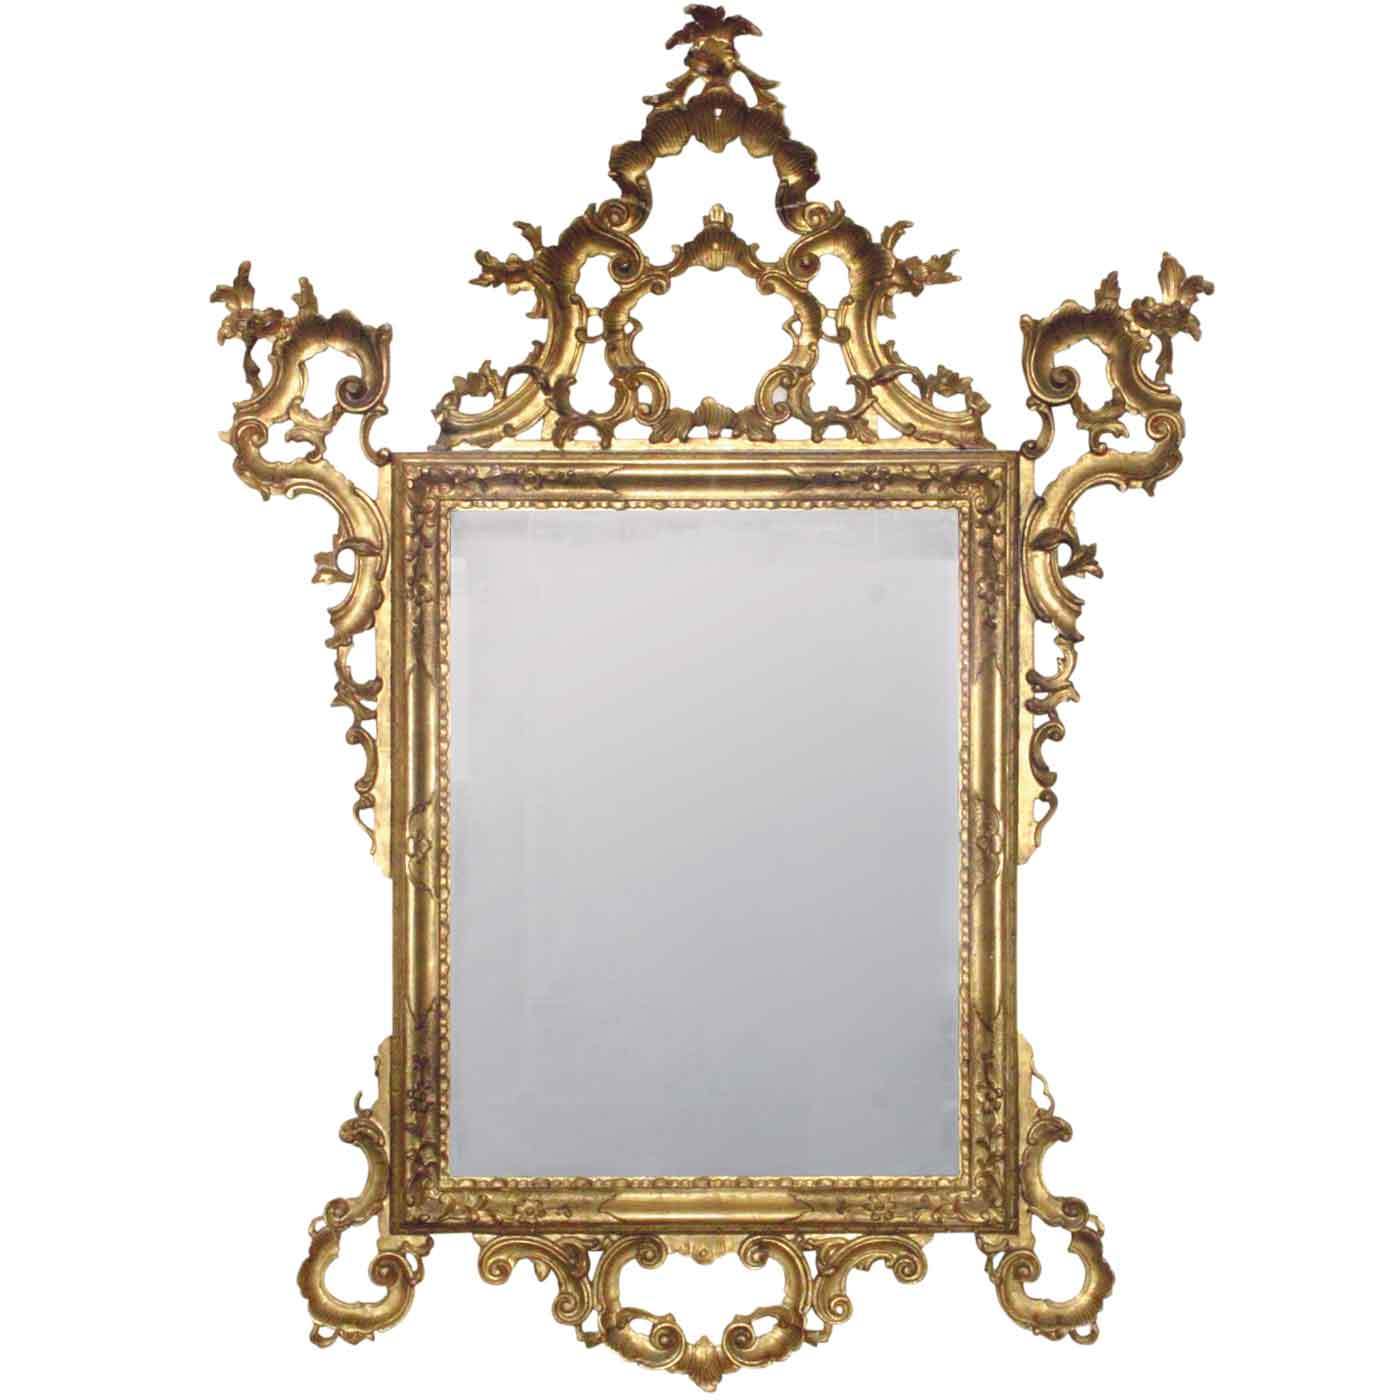  spiegel-barock-214.jpg